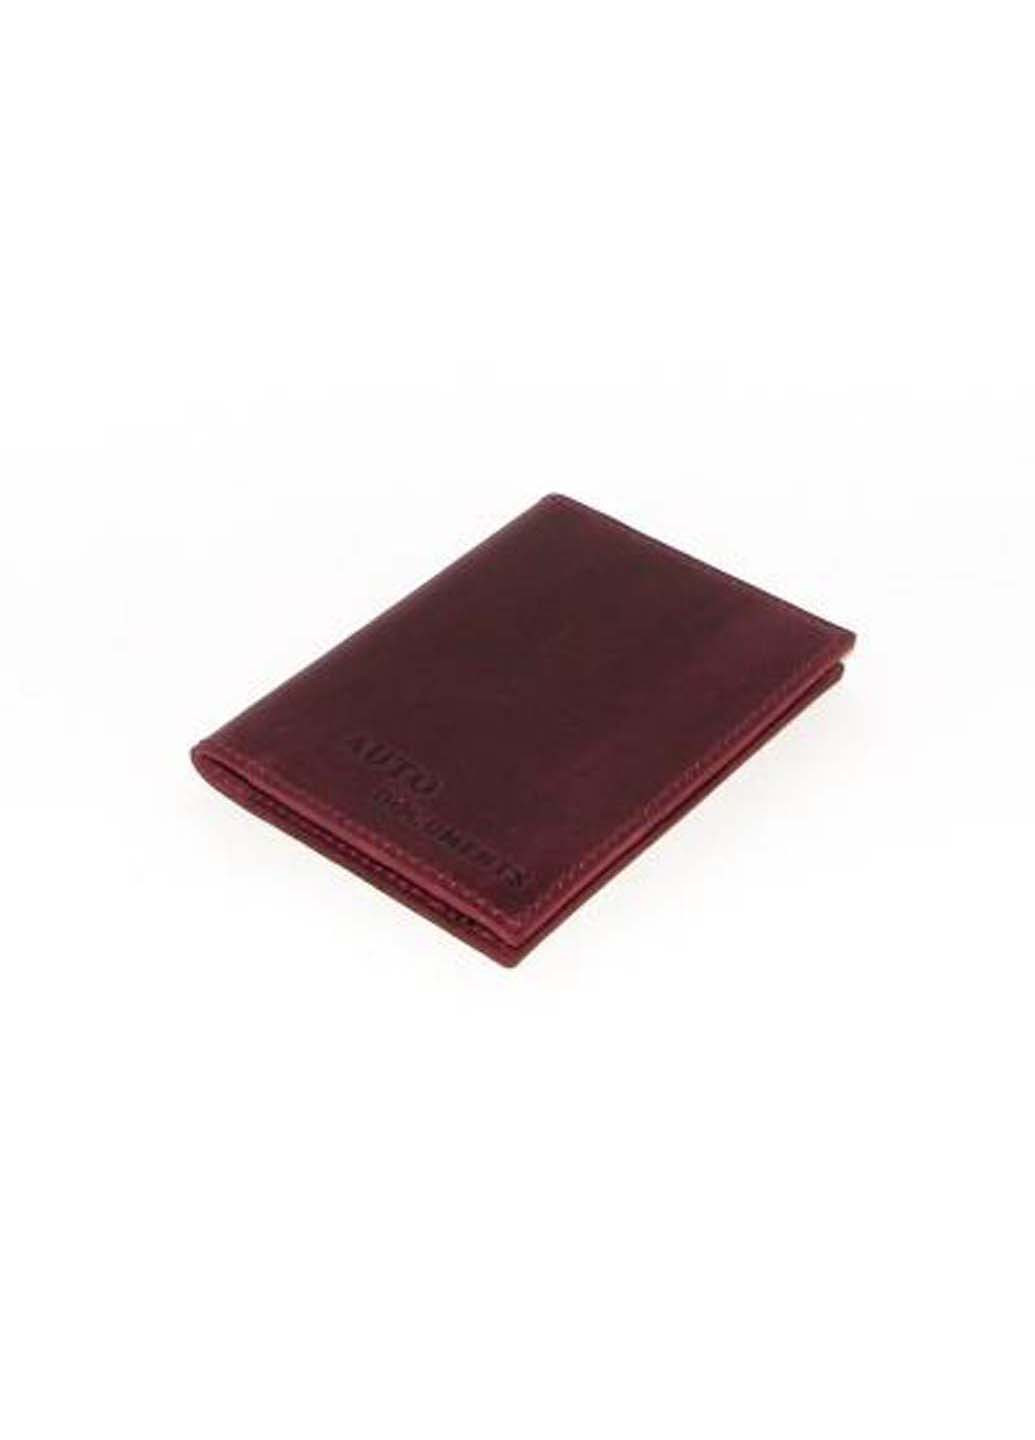 Обкладинка для паспорта 10 х 13 х 1,5 DNK Leather (252856663)